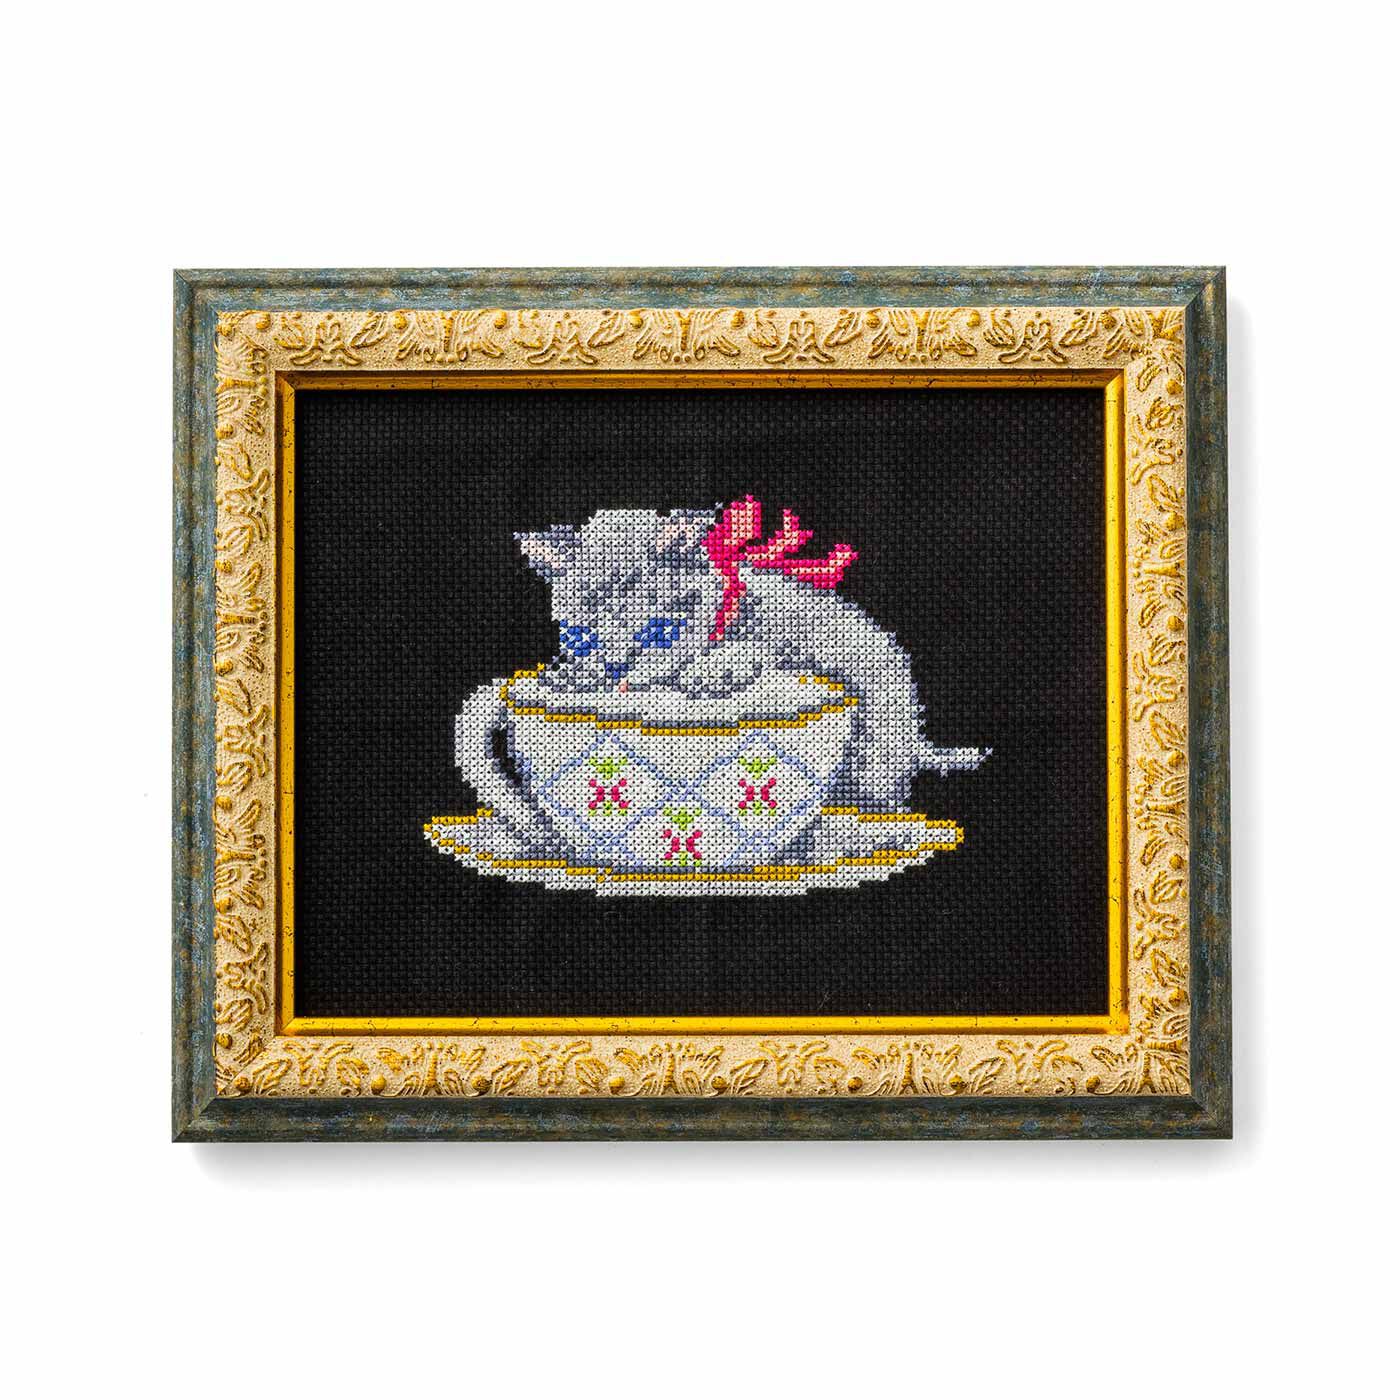 Couturier|ヴィクトリアンな愛らしさ 貴族のように優雅な猫のクロスステッチの会|ティーカップと戯れるルートヴィヒ